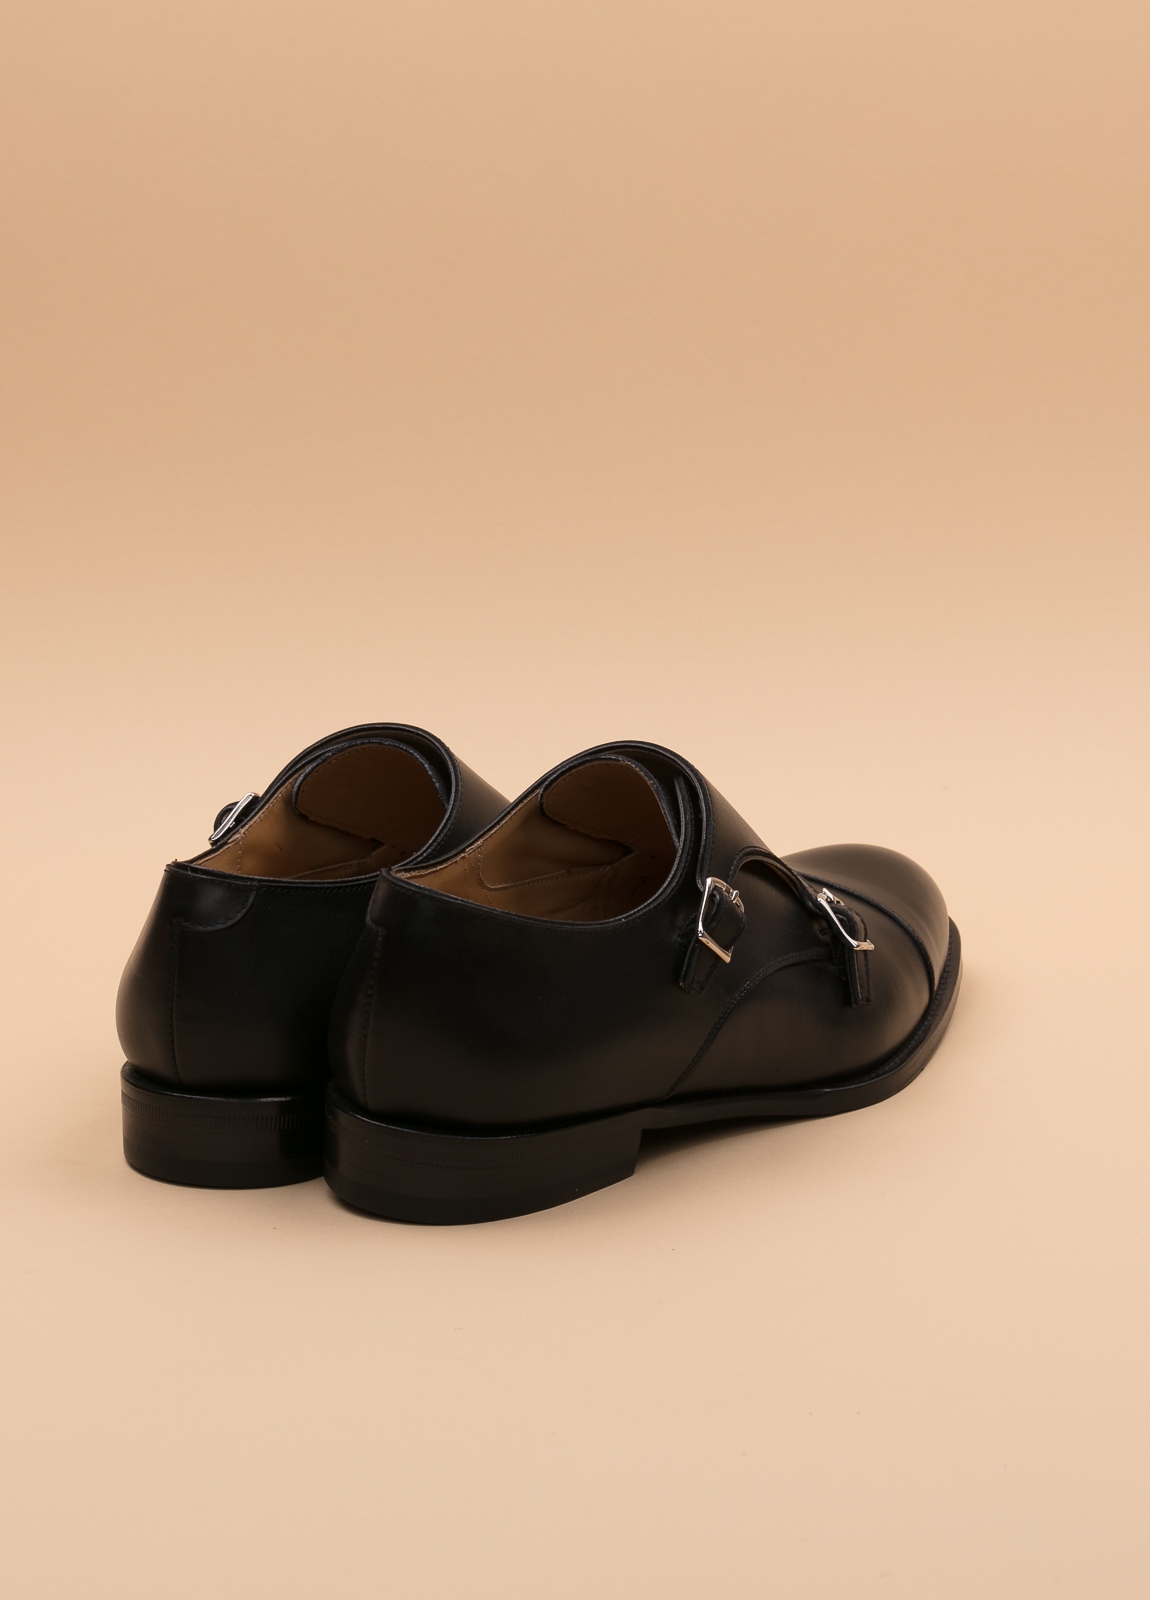 Zapato Formal Wear FUREST COLECCIÓN negro - Ítem3